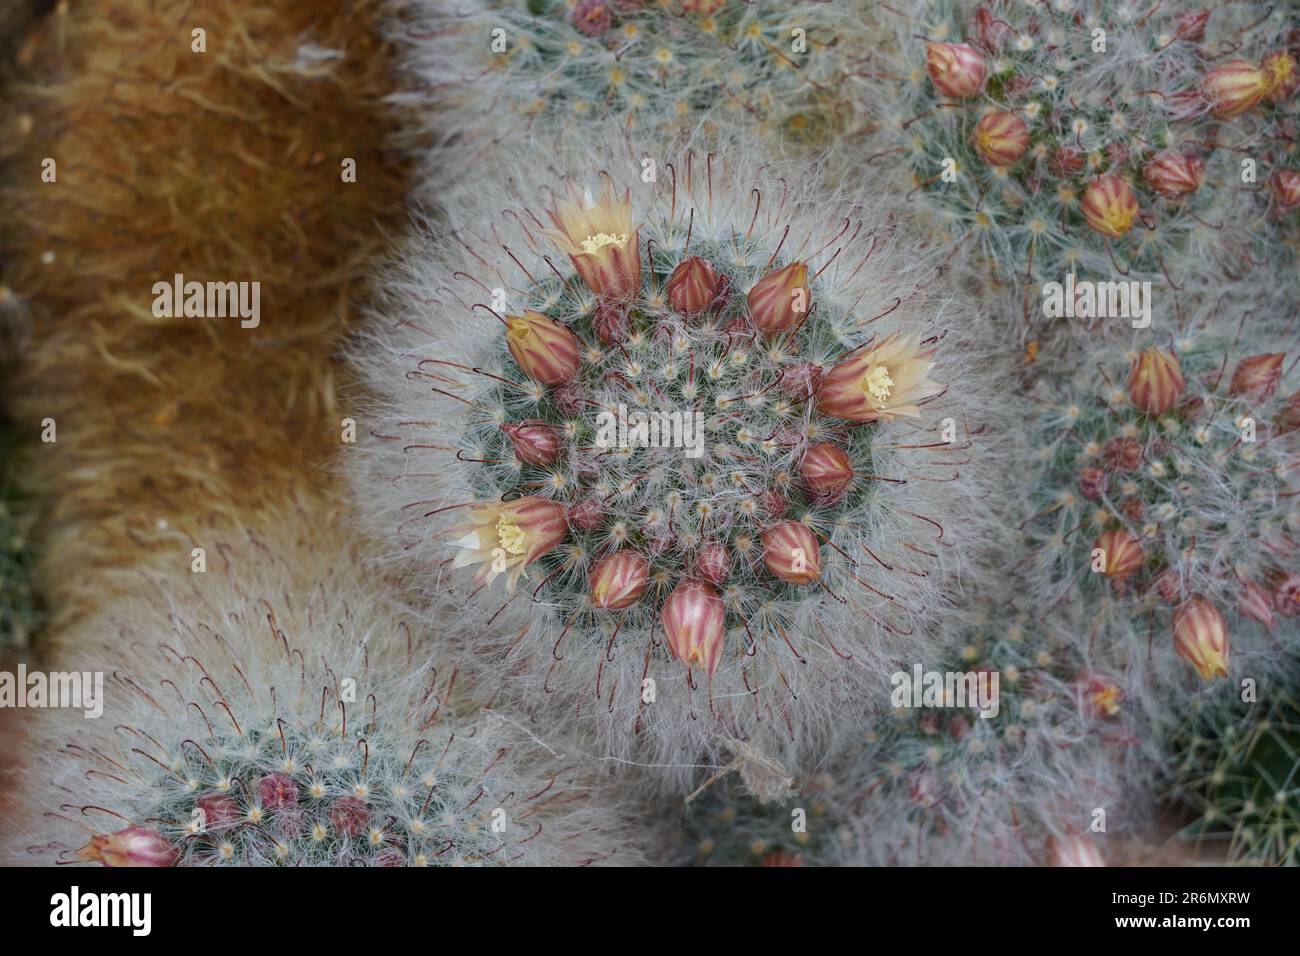 Kakteen im lateinischen Namen Mammillaria bocasana Poselger mit Blumen und Blütenknospen, die auf jedem Globus im Kreis wachsen. Stockfoto